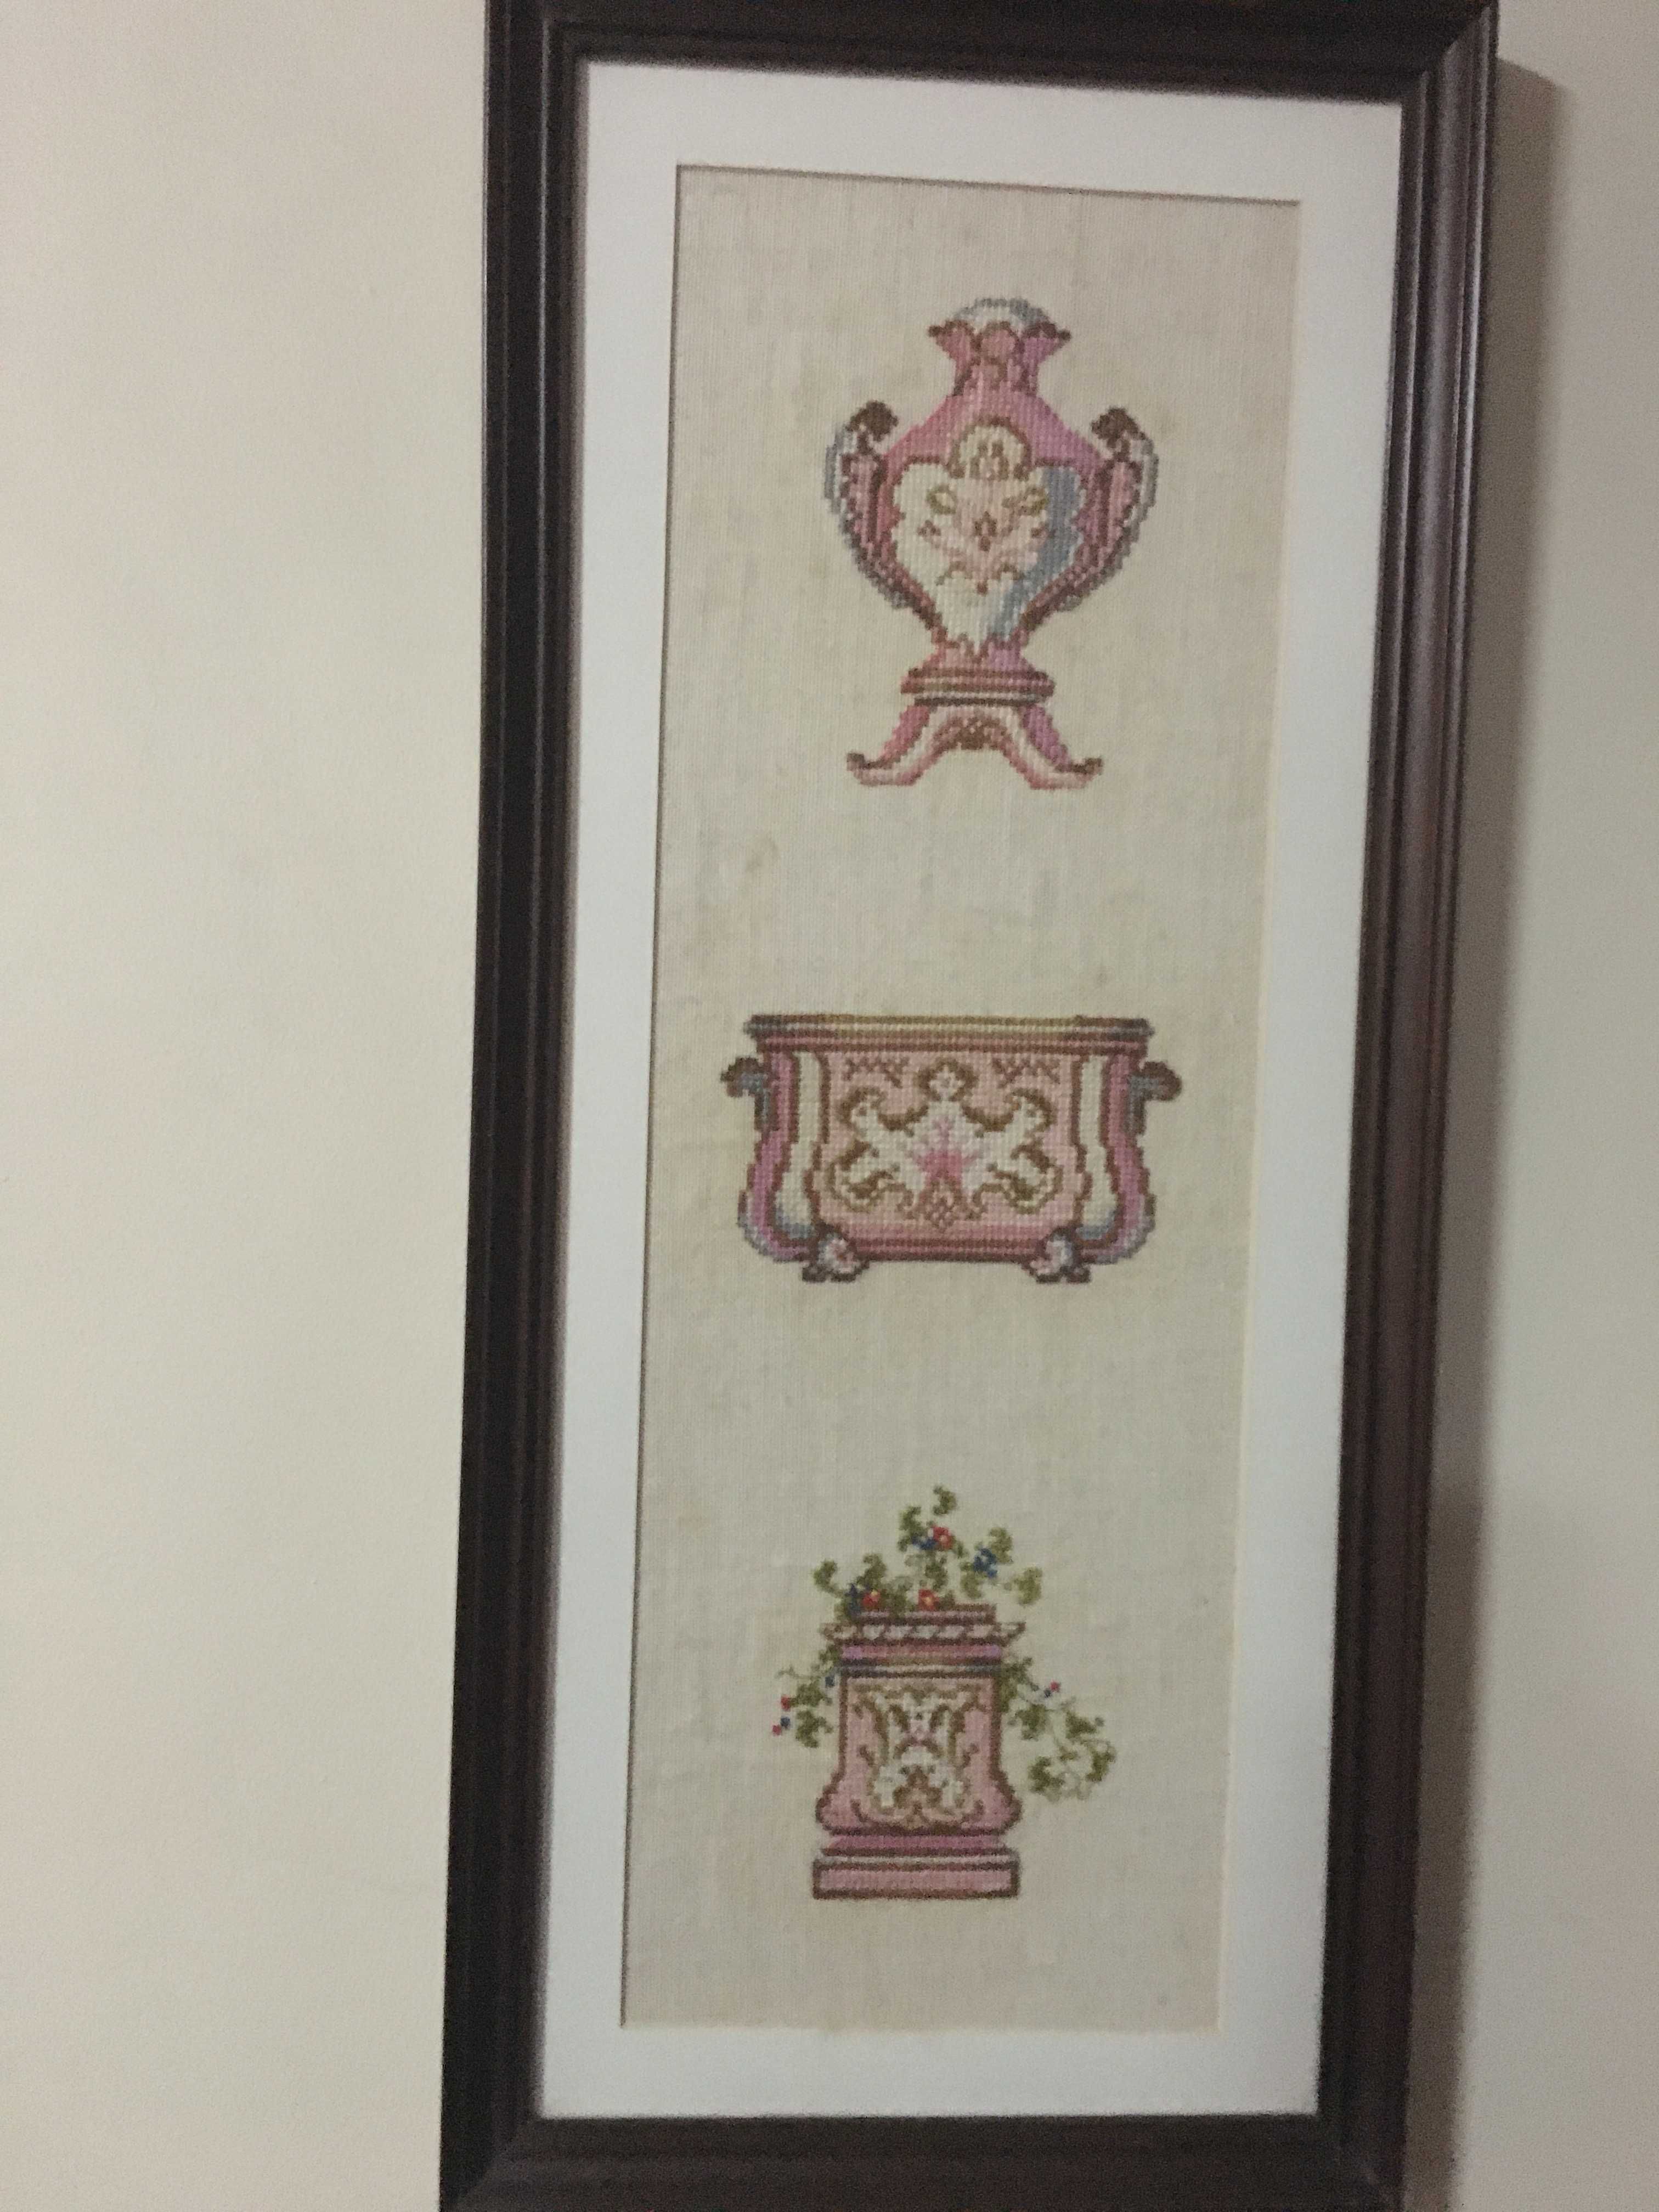 3 X Quadros Molduras em Madeira com imagens feitas em ponto de cruz